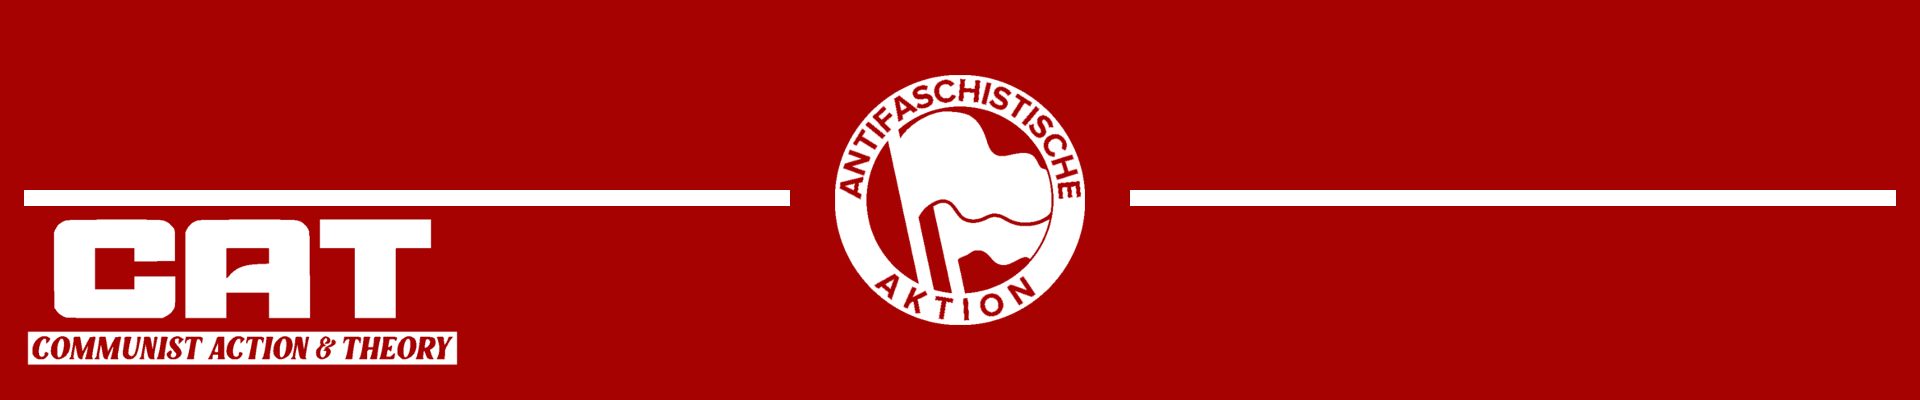 Demo: Kein Raum der AfD! Antifa in die Offensive!